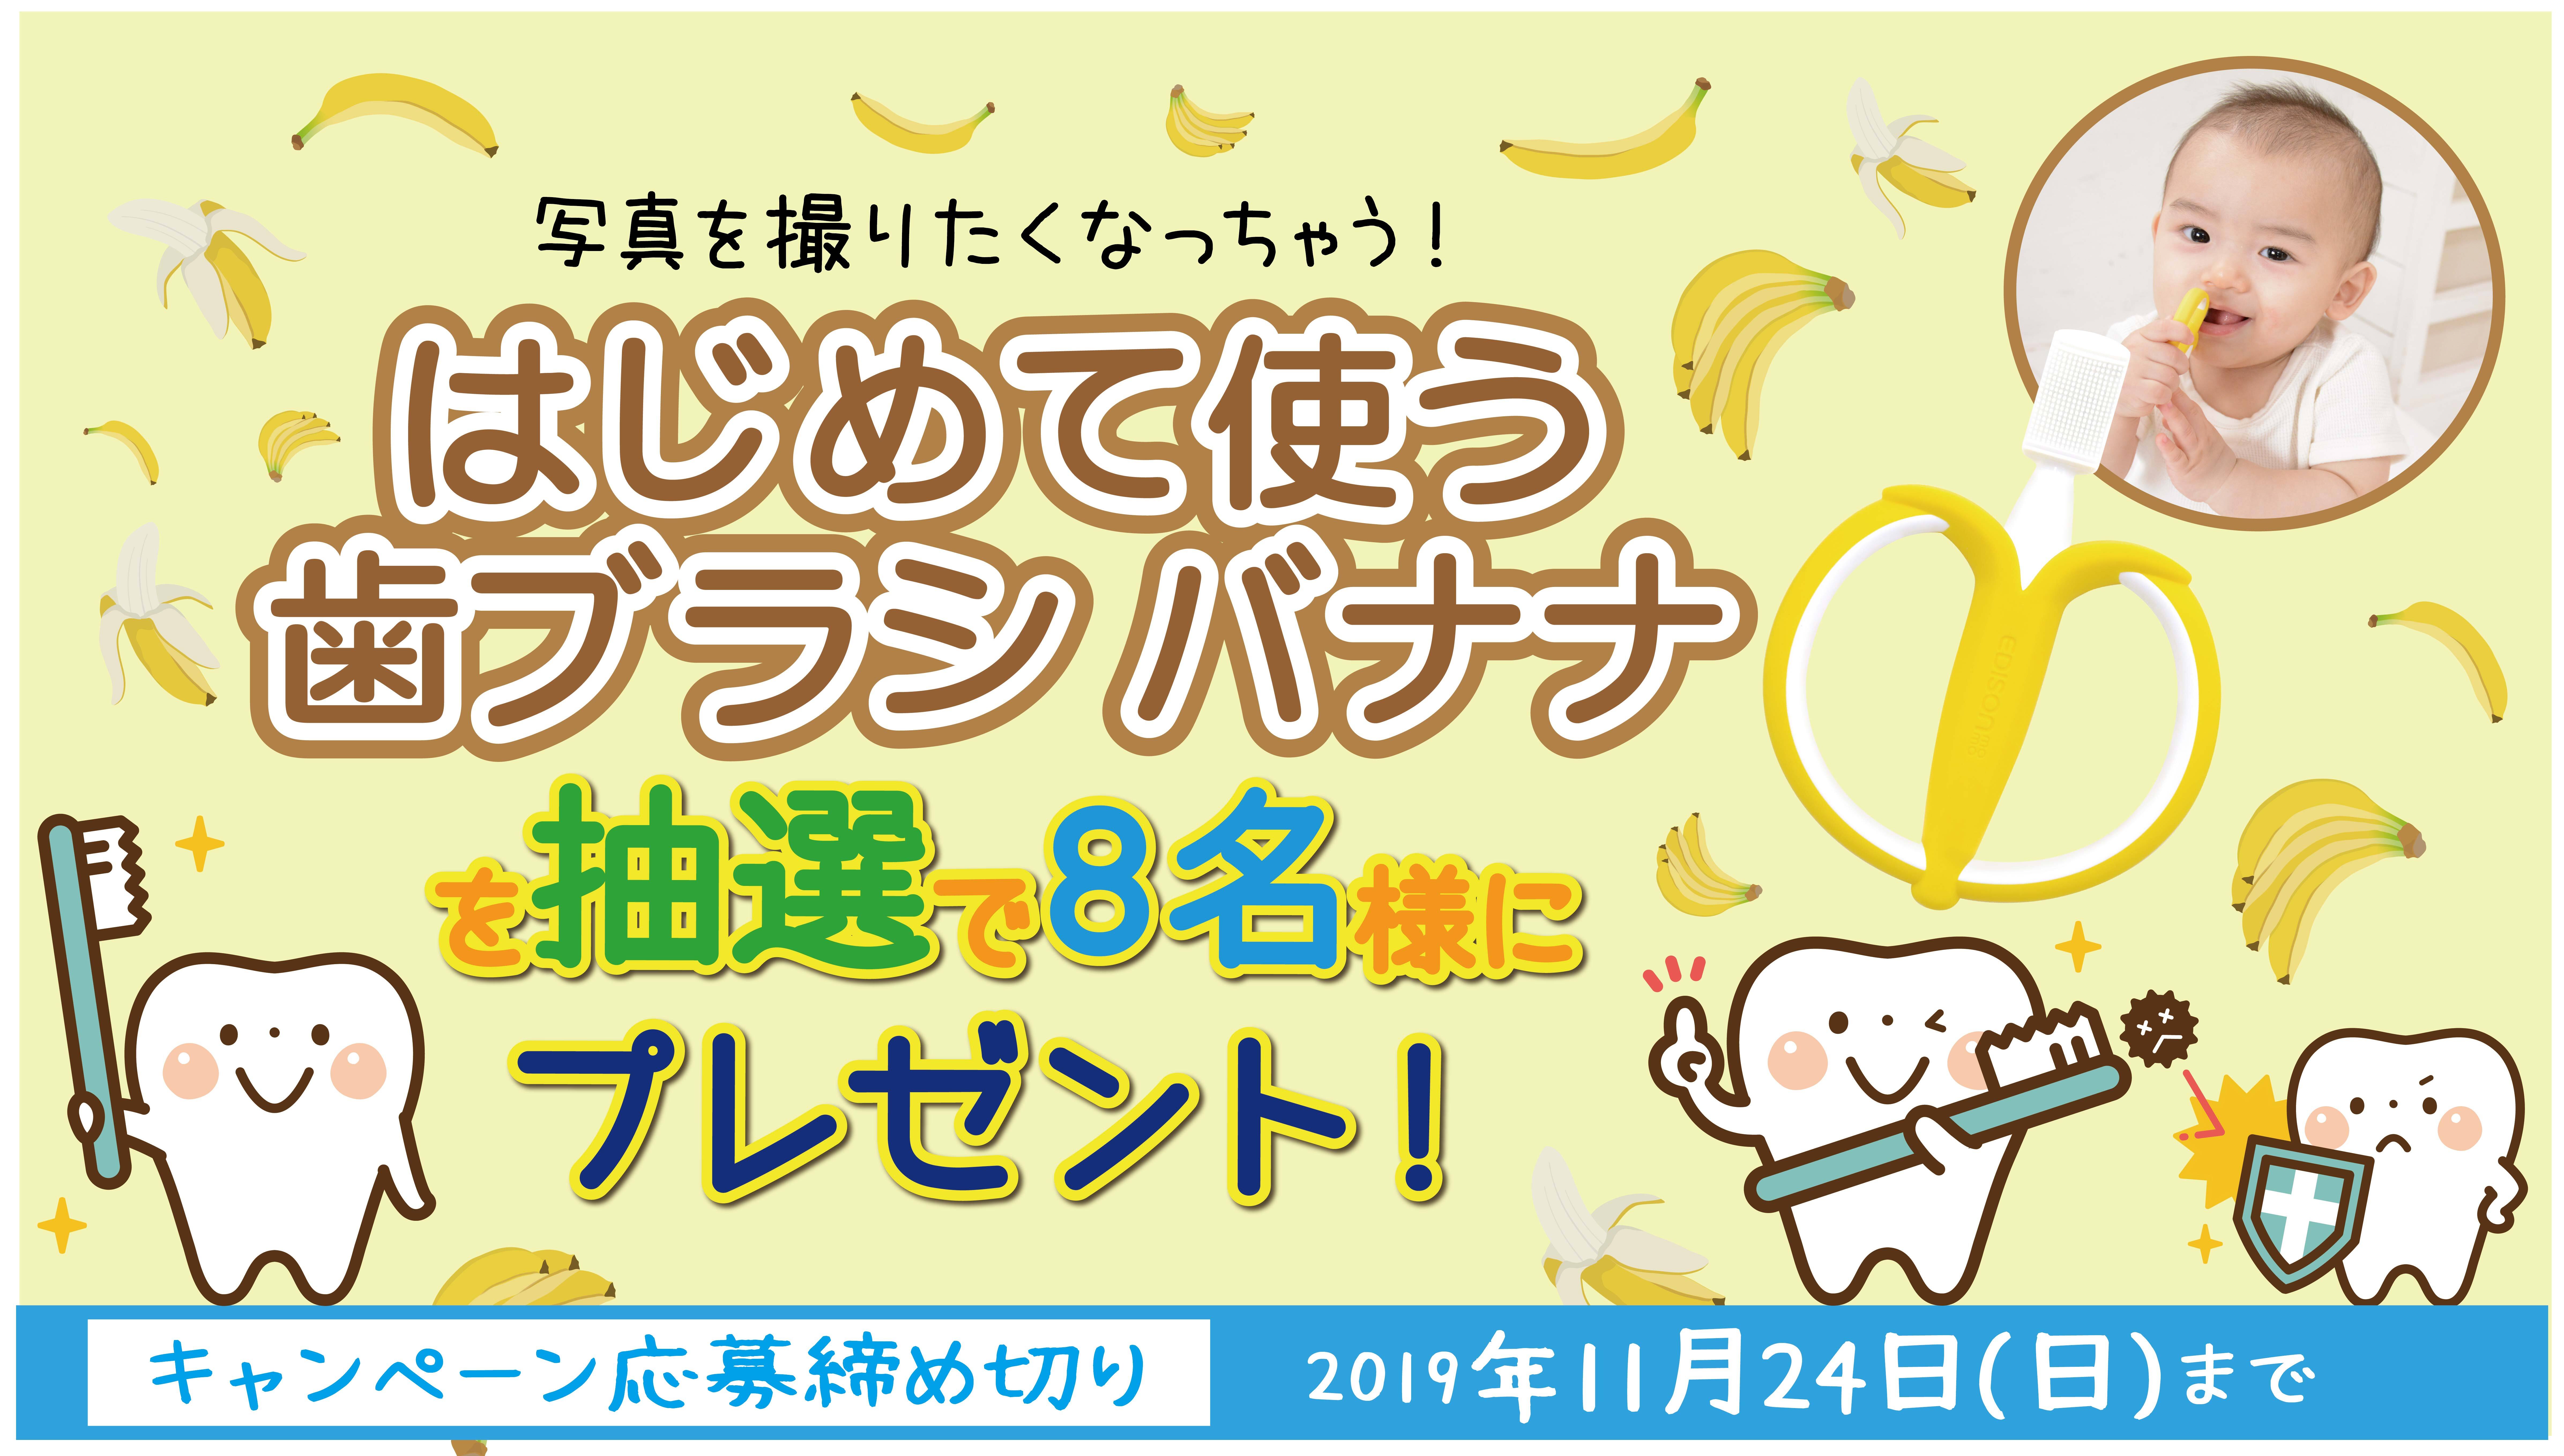 192円 【税込?送料無料】 EDISONmama エジソンママ はじめて使う歯ブラシ バナナ 1個 x 1